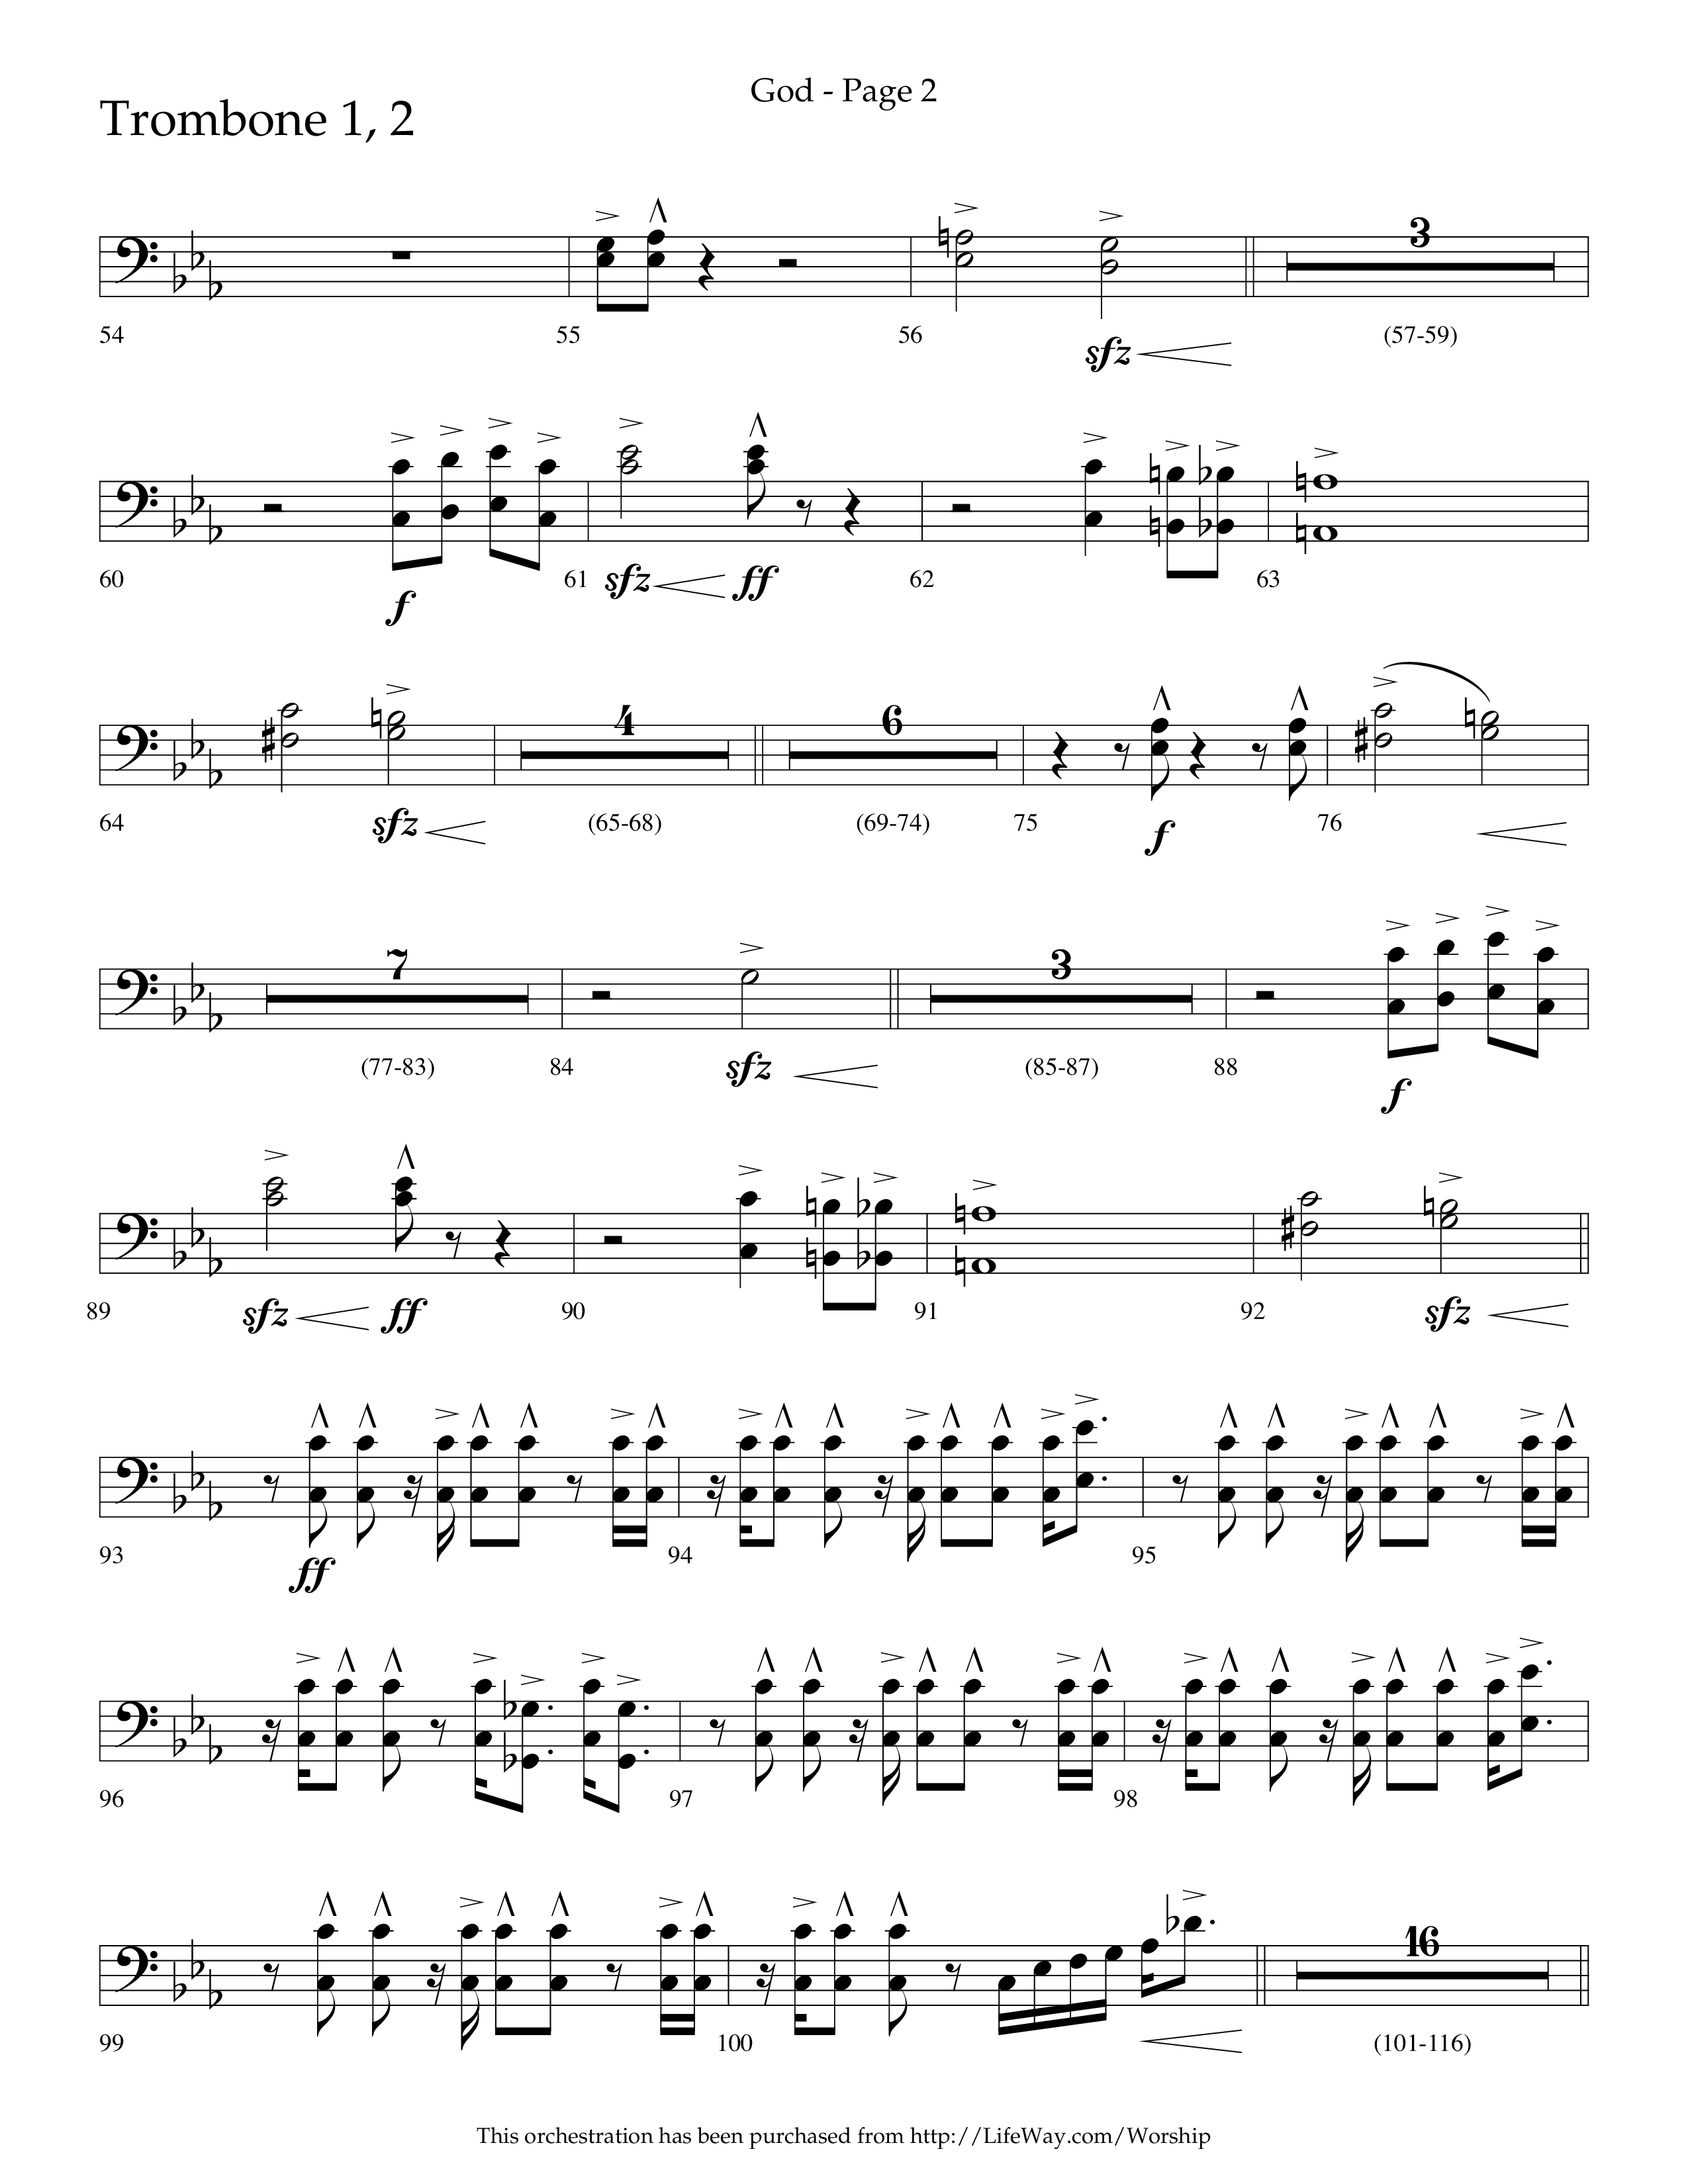 God (Choral Anthem SATB) Trombone 1/2 (Lifeway Choral / Arr. Cliff Duren)